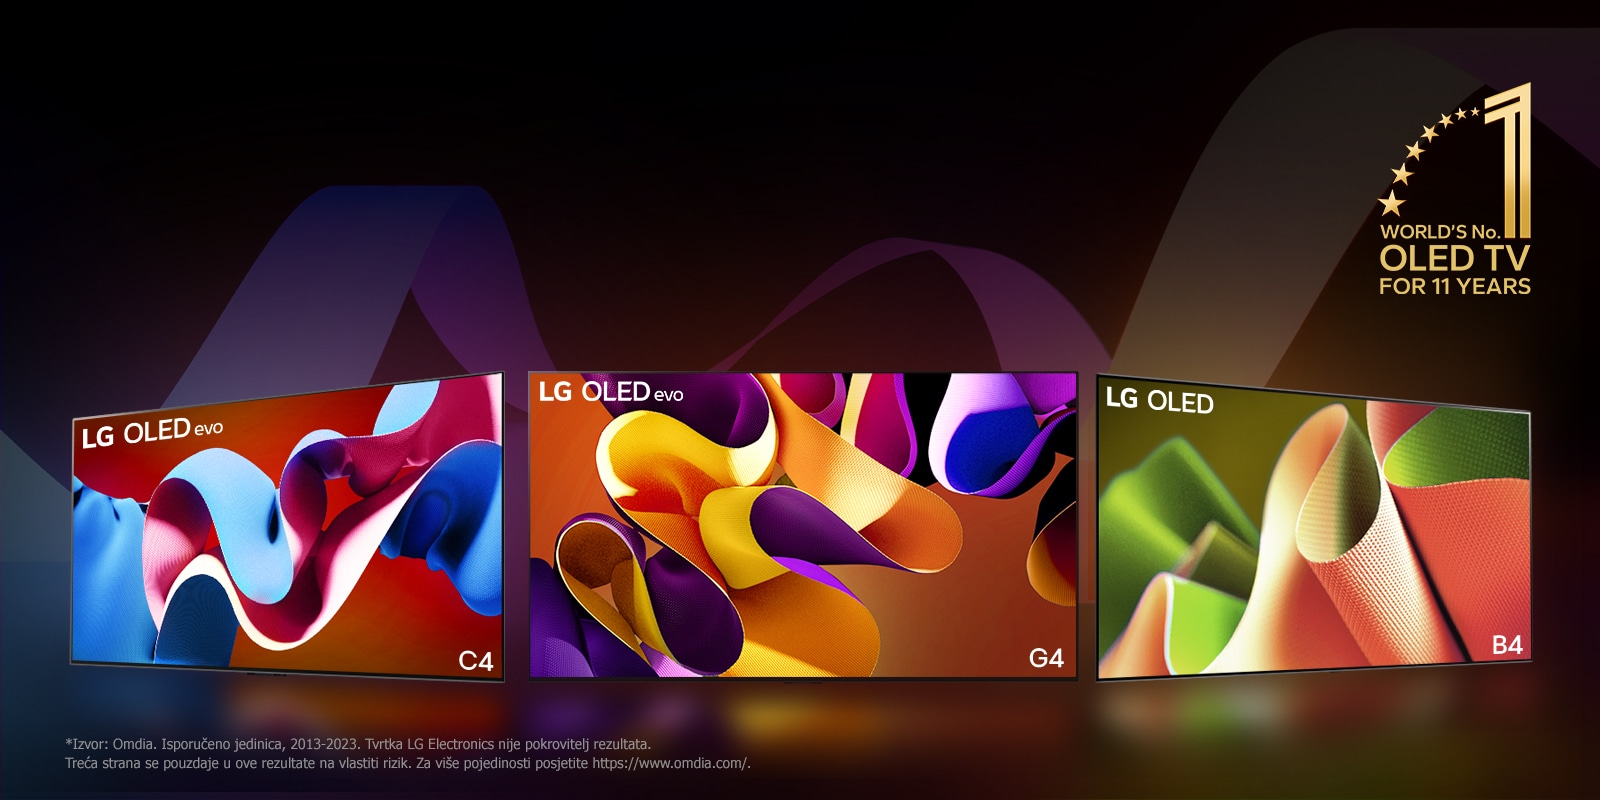 Televizori LG OLED evo TV C4, evo G4 i B4 poredani su jedan do drugog na crnoj pozadini sa suptilnim vrtlozima boja. Na slici je prikazan amblem „Najbolji OLED TV na svijetu već 11 godina”.  Odricanje od odgovornosti glasi: "Izvor: Omdia. Isporučeno jedinica, 2013-2023. Tvrtka LG Electronics nije pokrovitelj rezultata. Treća strana se pouzdaje u ove rezultate na vlastiti rizik. Za više pojedinosti posjetite https://www.omdia.com/.”